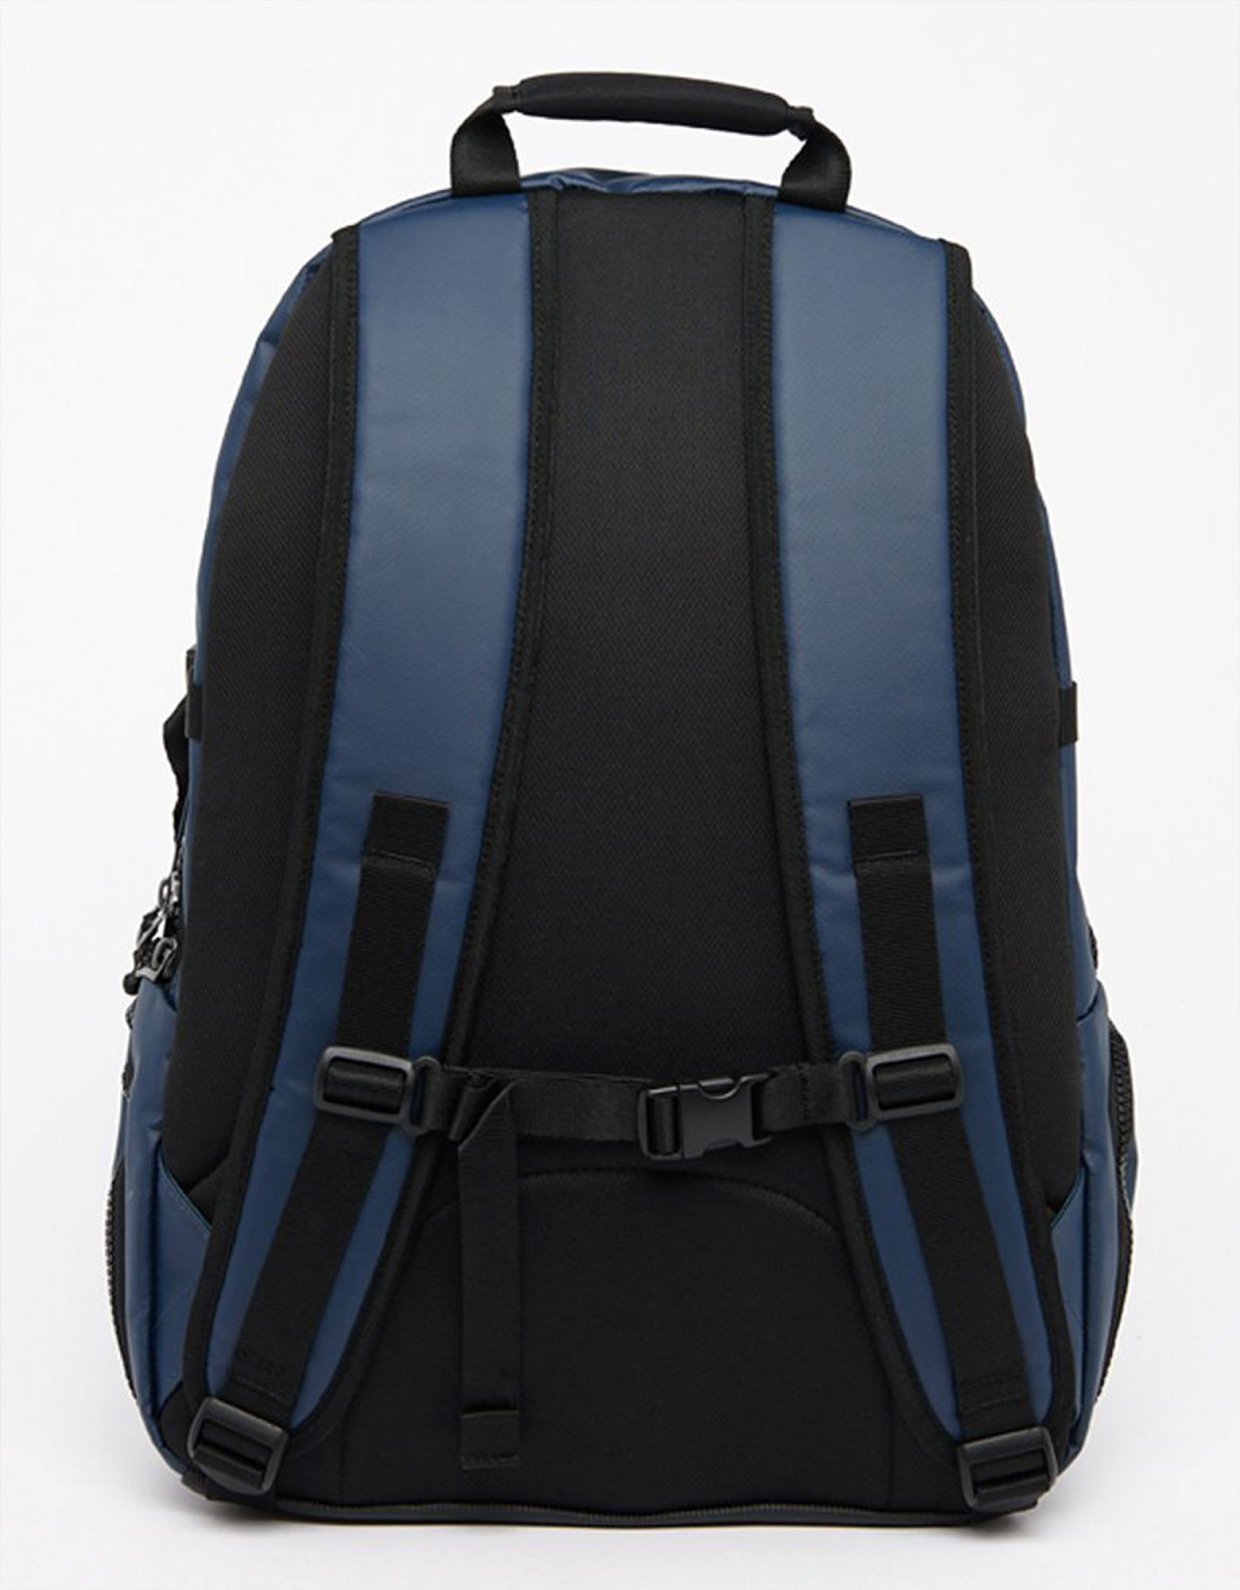 Superdry Code tarp backpack dark navy